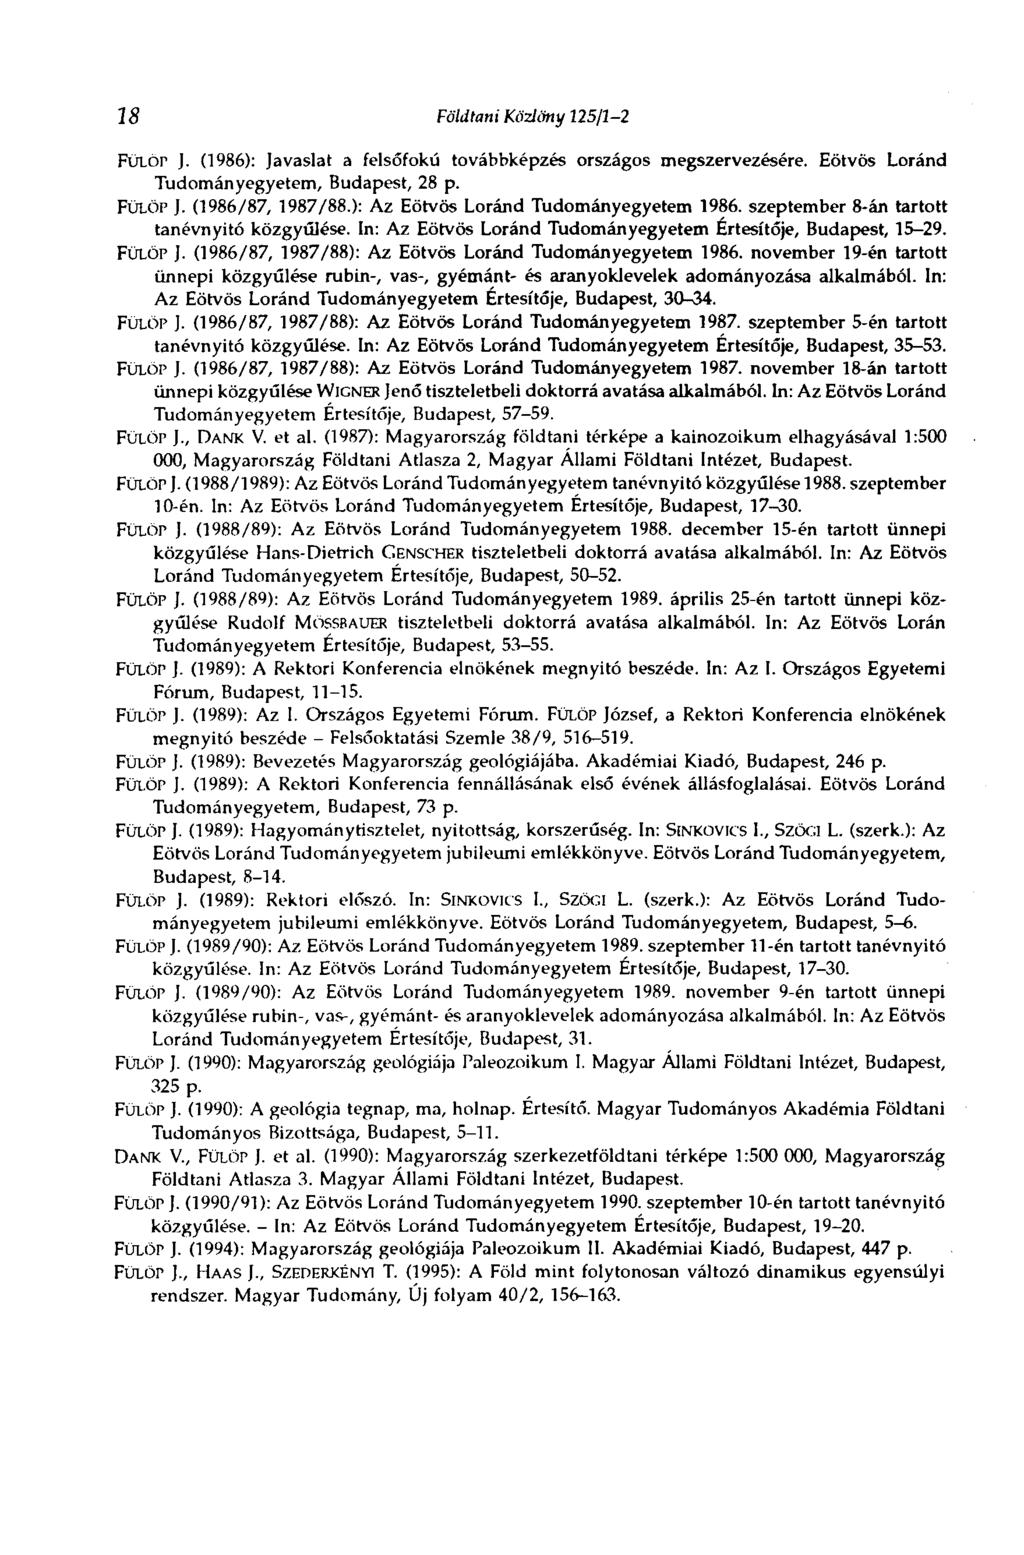 18 Földtani Közlöny 125/J-2 FüLór J. (1986): Javaslat a felsőfokú továbbképzés országos megszervezésére. Eötvös Loránd Tudományegyetem, Budapest, 28 p. FÜLÖP J. (1986/87, 1987/88.